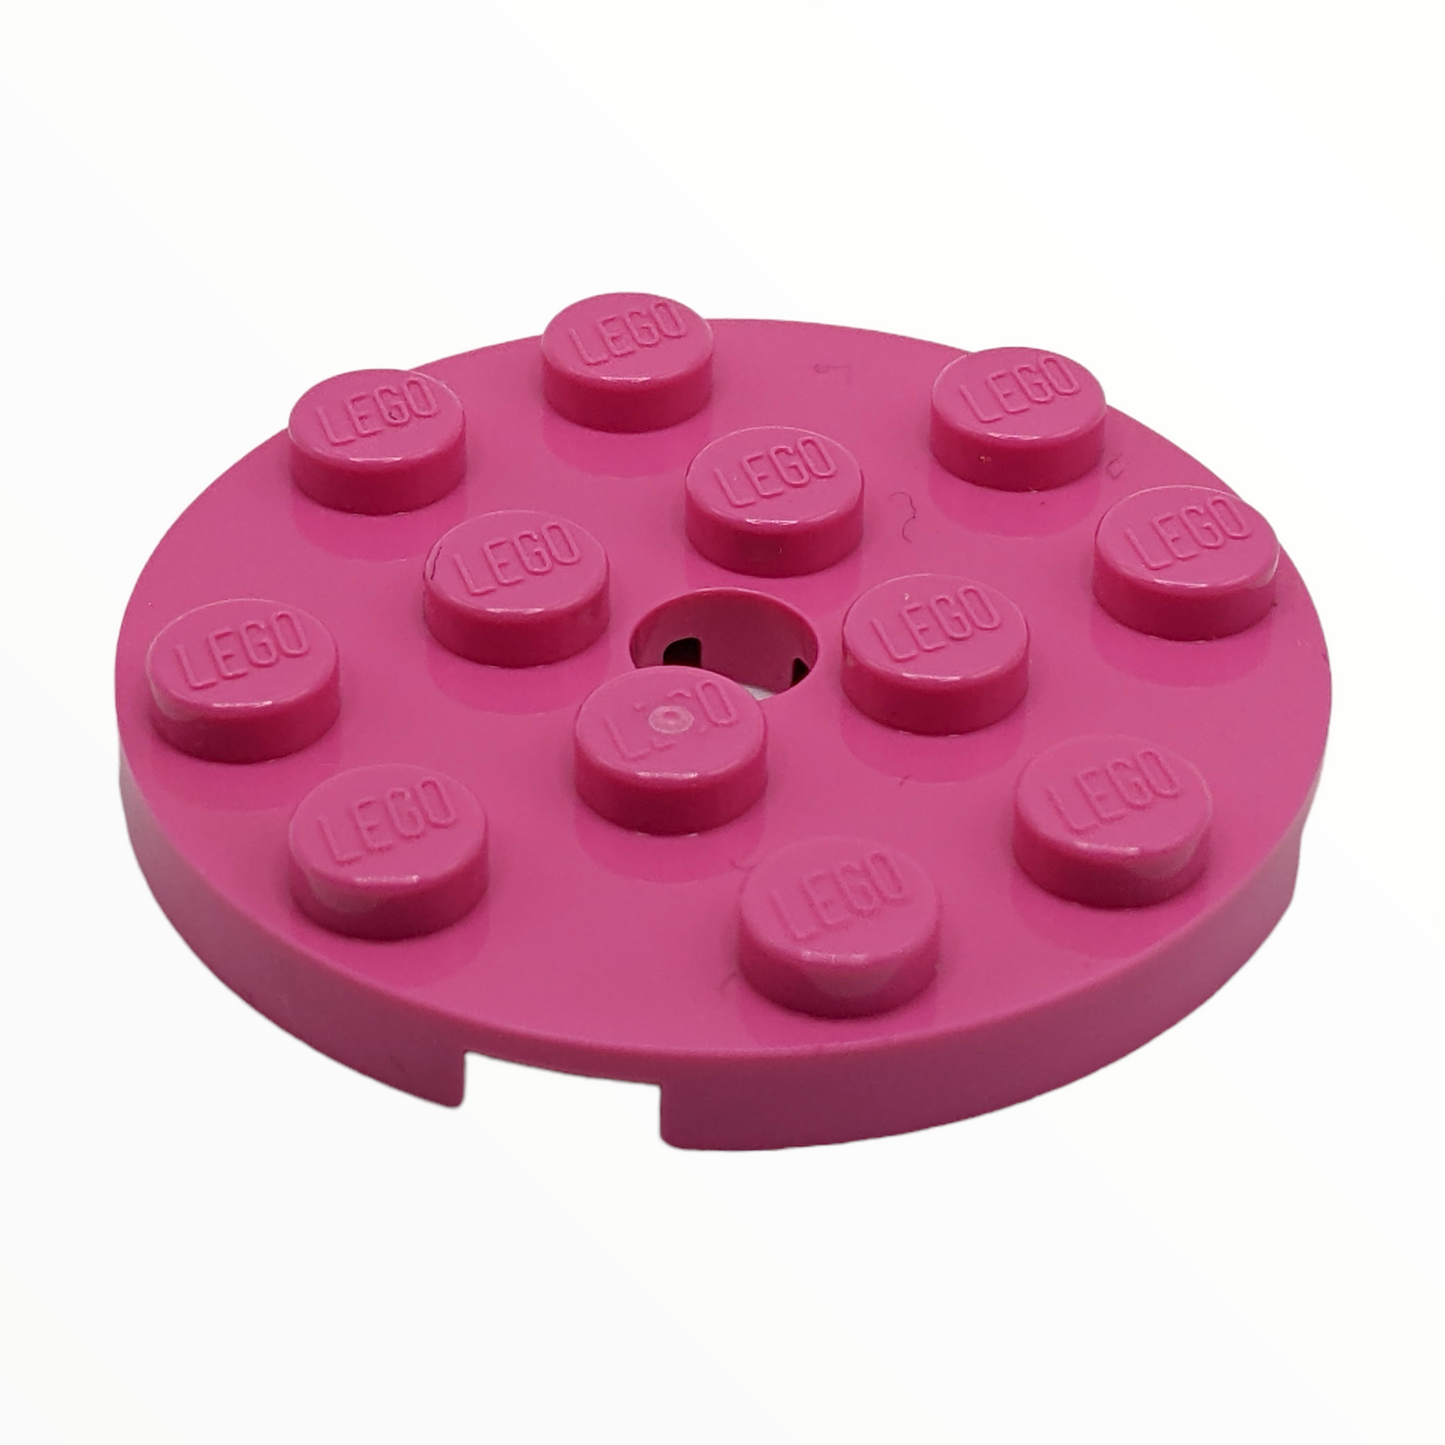 LEGO Plate Round 4x4 - verschiedene Farben